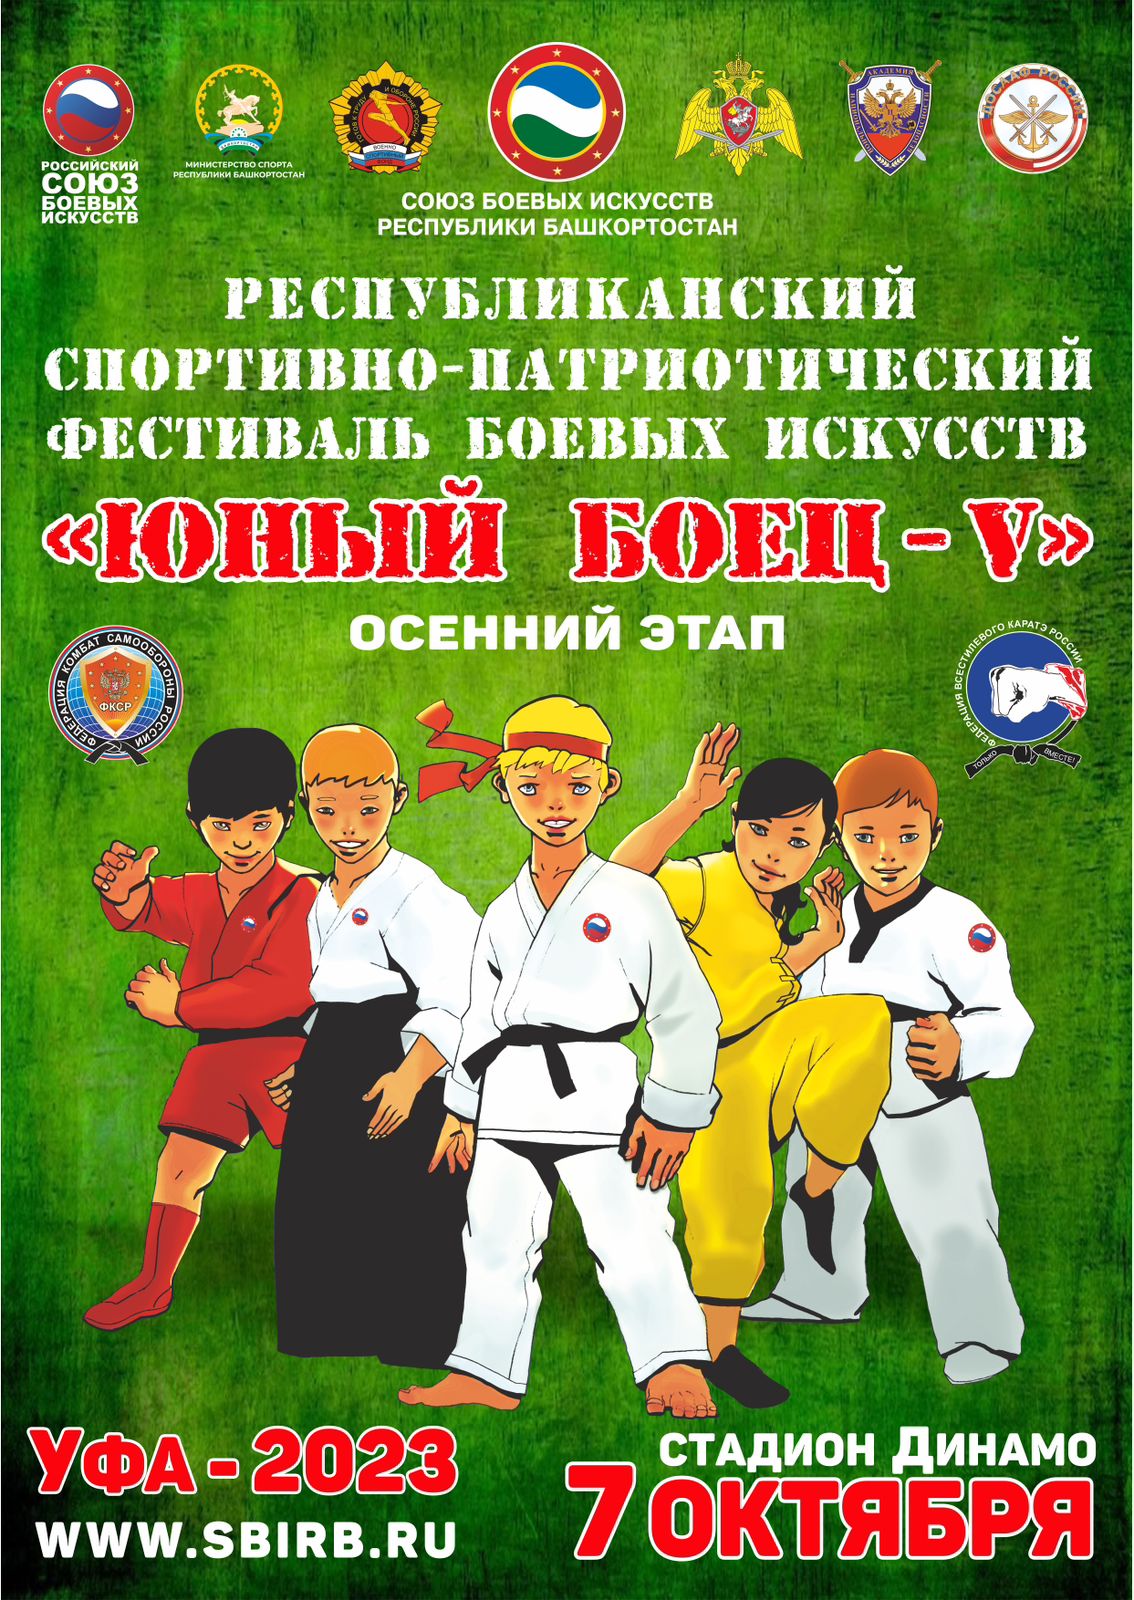 7 октября в Уфе пройдёт республиканский спортивно-патриотический фестиваль боевых искусств «Юный боец — V»